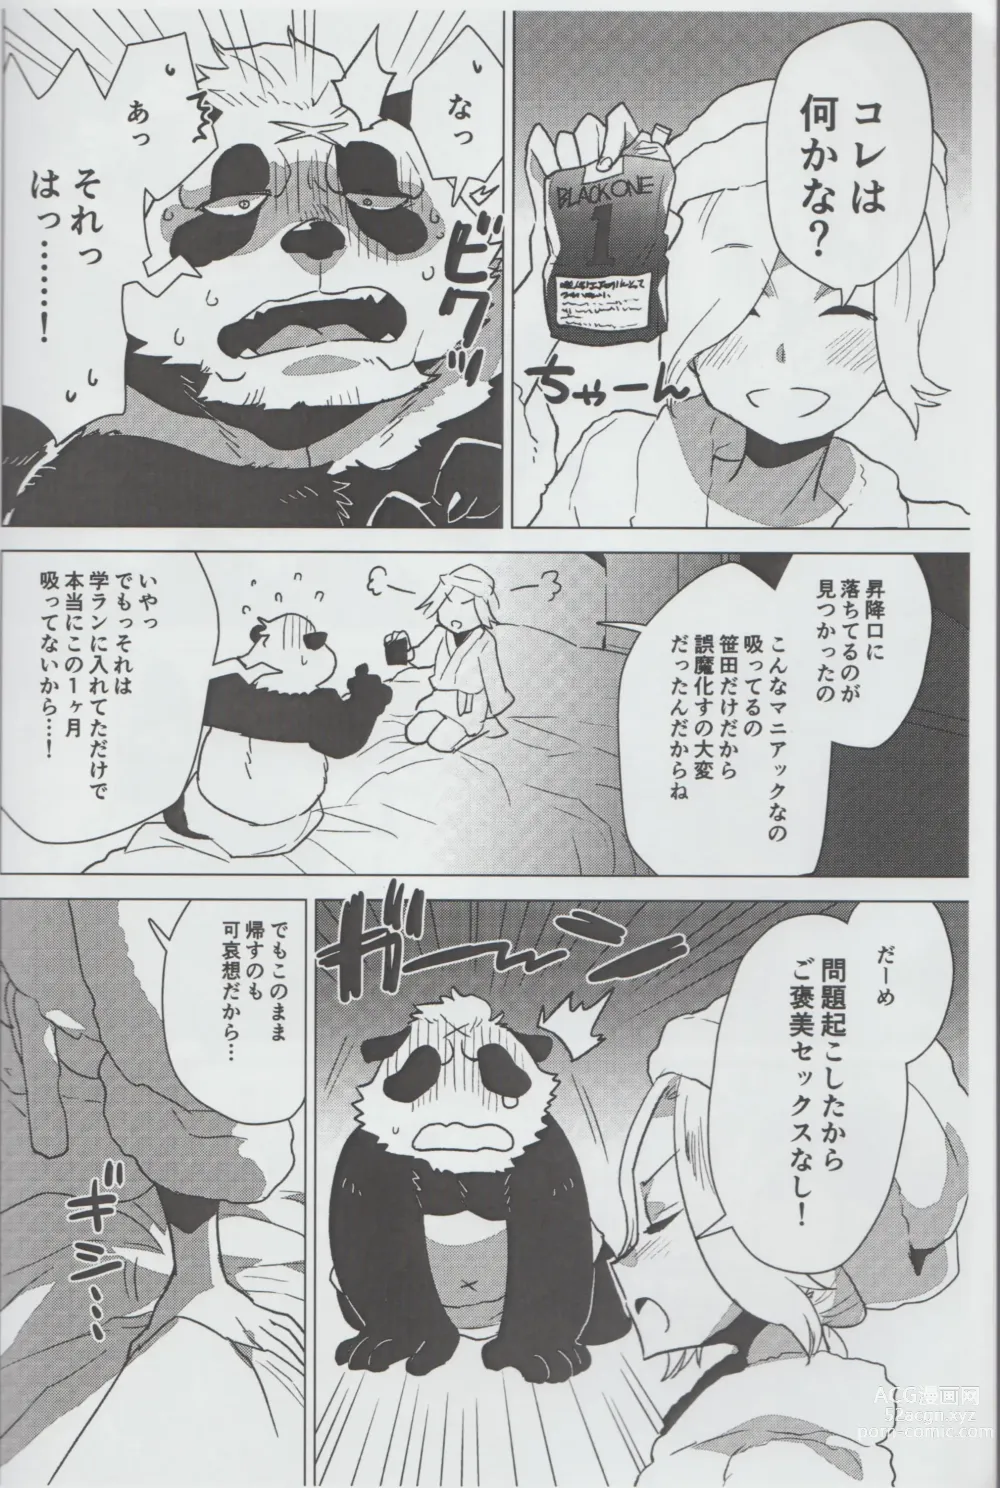 Page 9 of doujinshi Mihoshi Ginza Shopping Street Kaihoushi vol. 07